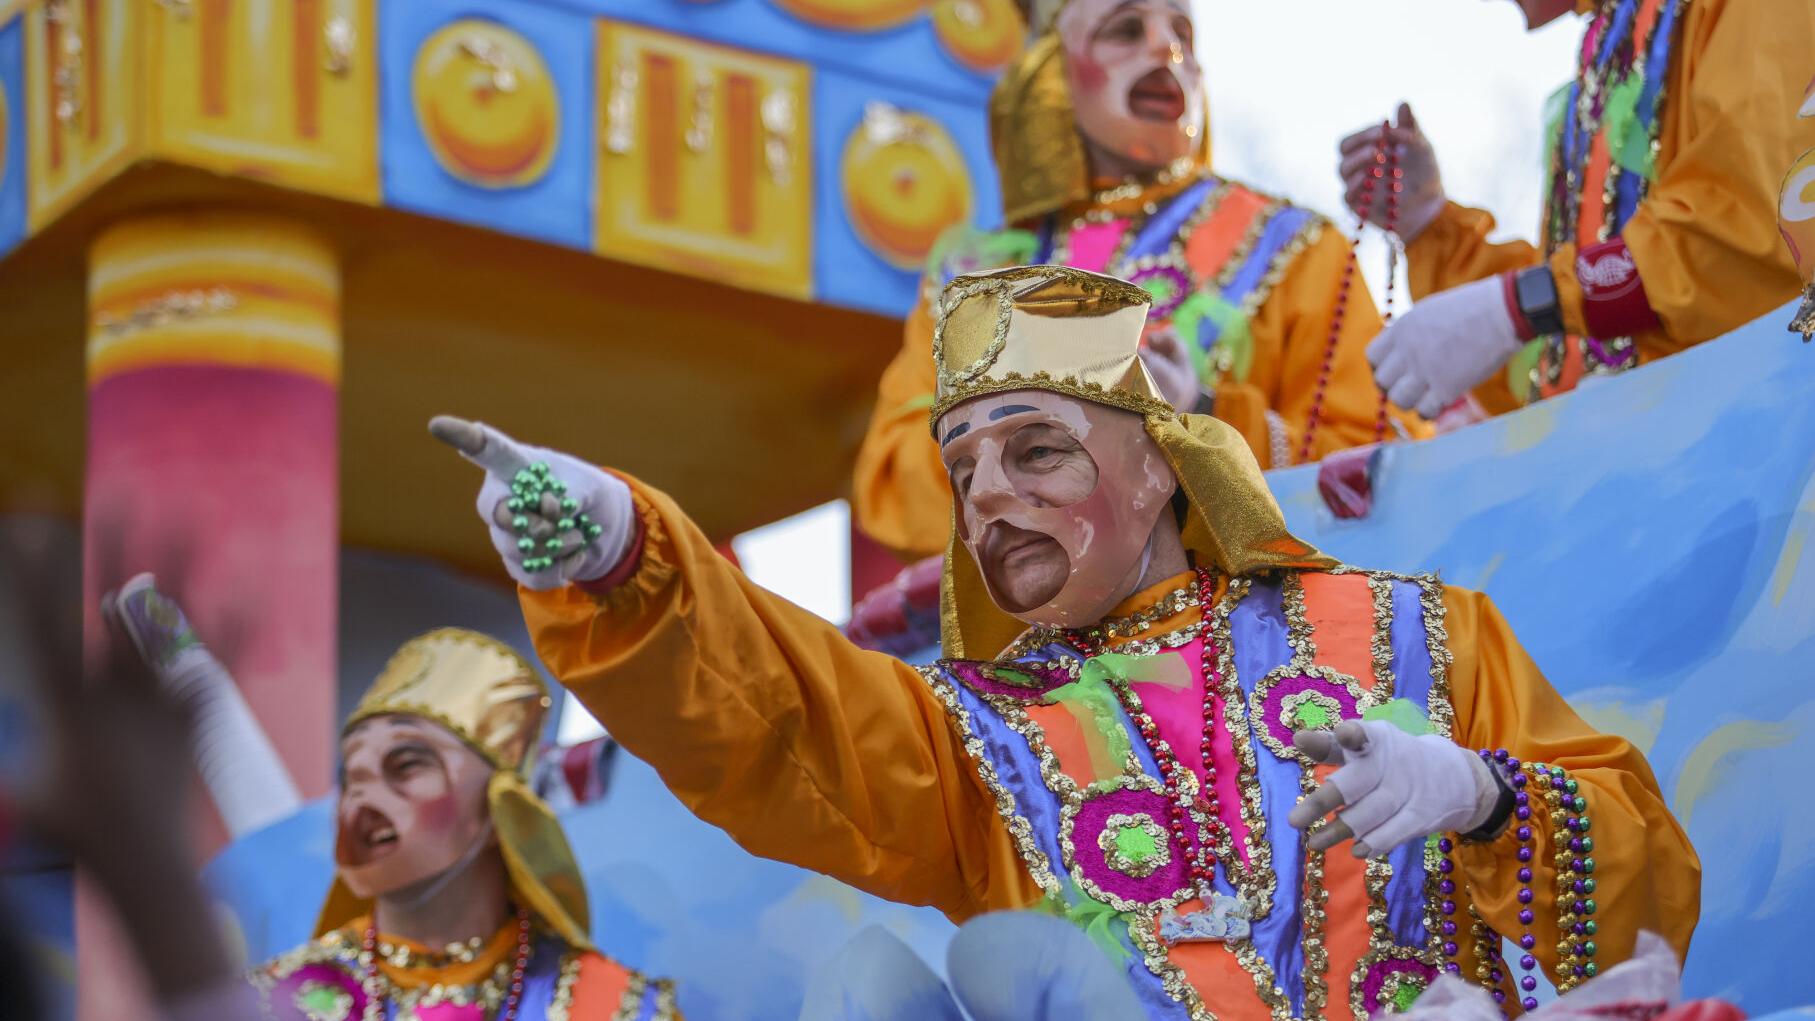 What are the origins of Mardi Gras costumes?, Mardi Gras